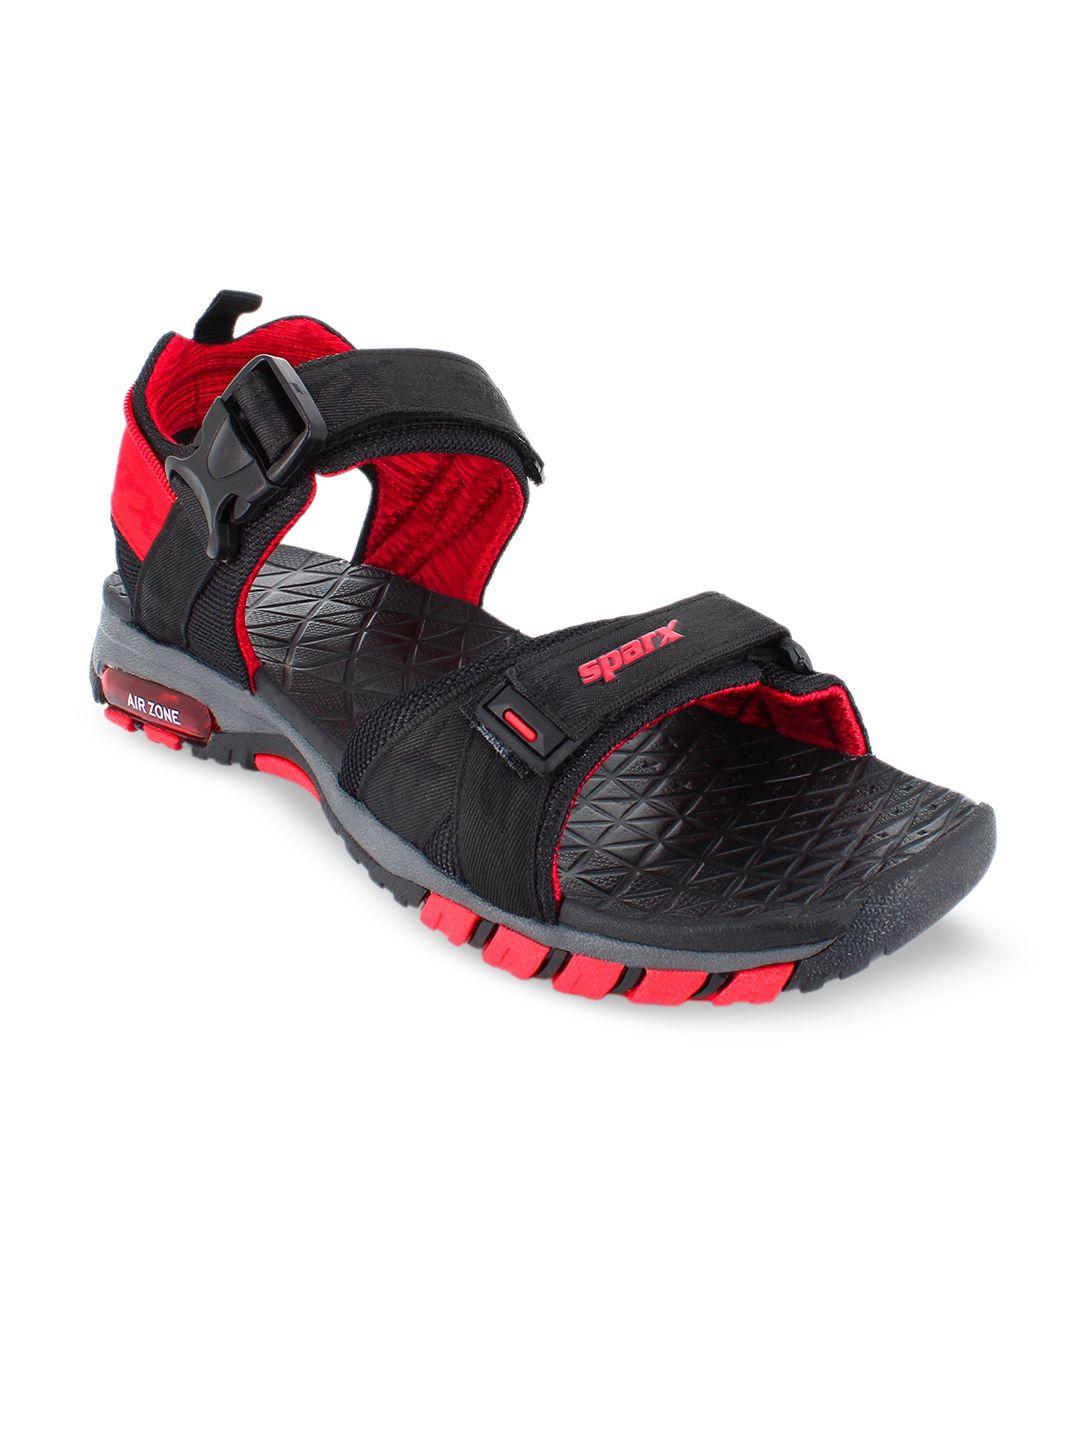 sparx-men-textured-sports-sandals